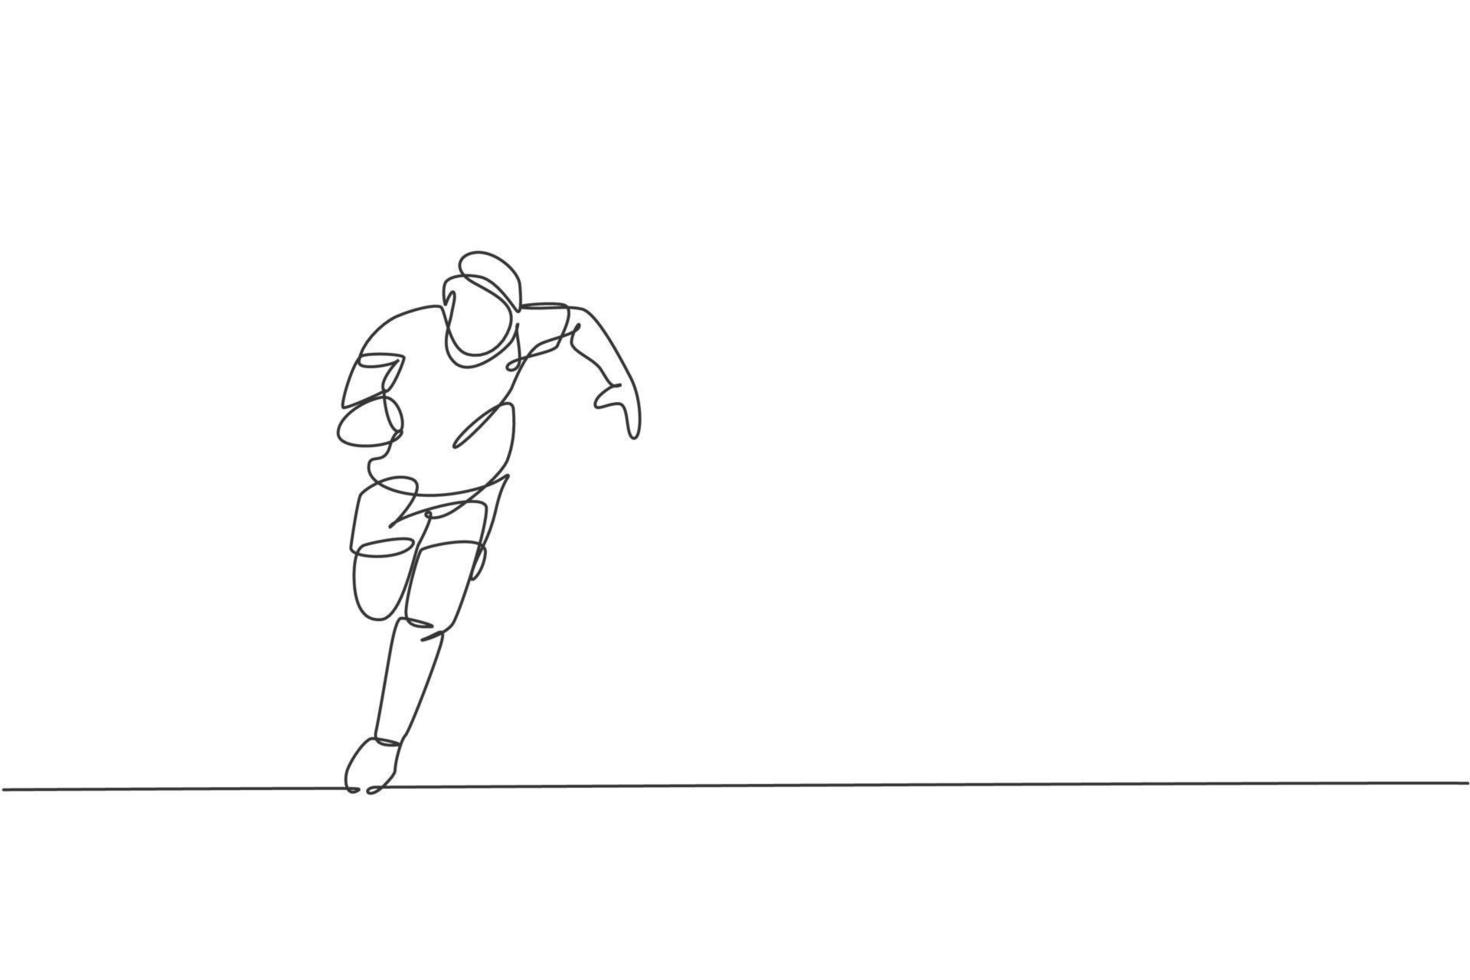 un dessin en ligne continu d'un jeune joueur de rugby courir et tenir le ballon. concept de sport agressif compétitif. illustration vectorielle dynamique de conception de dessin à une seule ligne pour les médias de promotion de tournoi vecteur